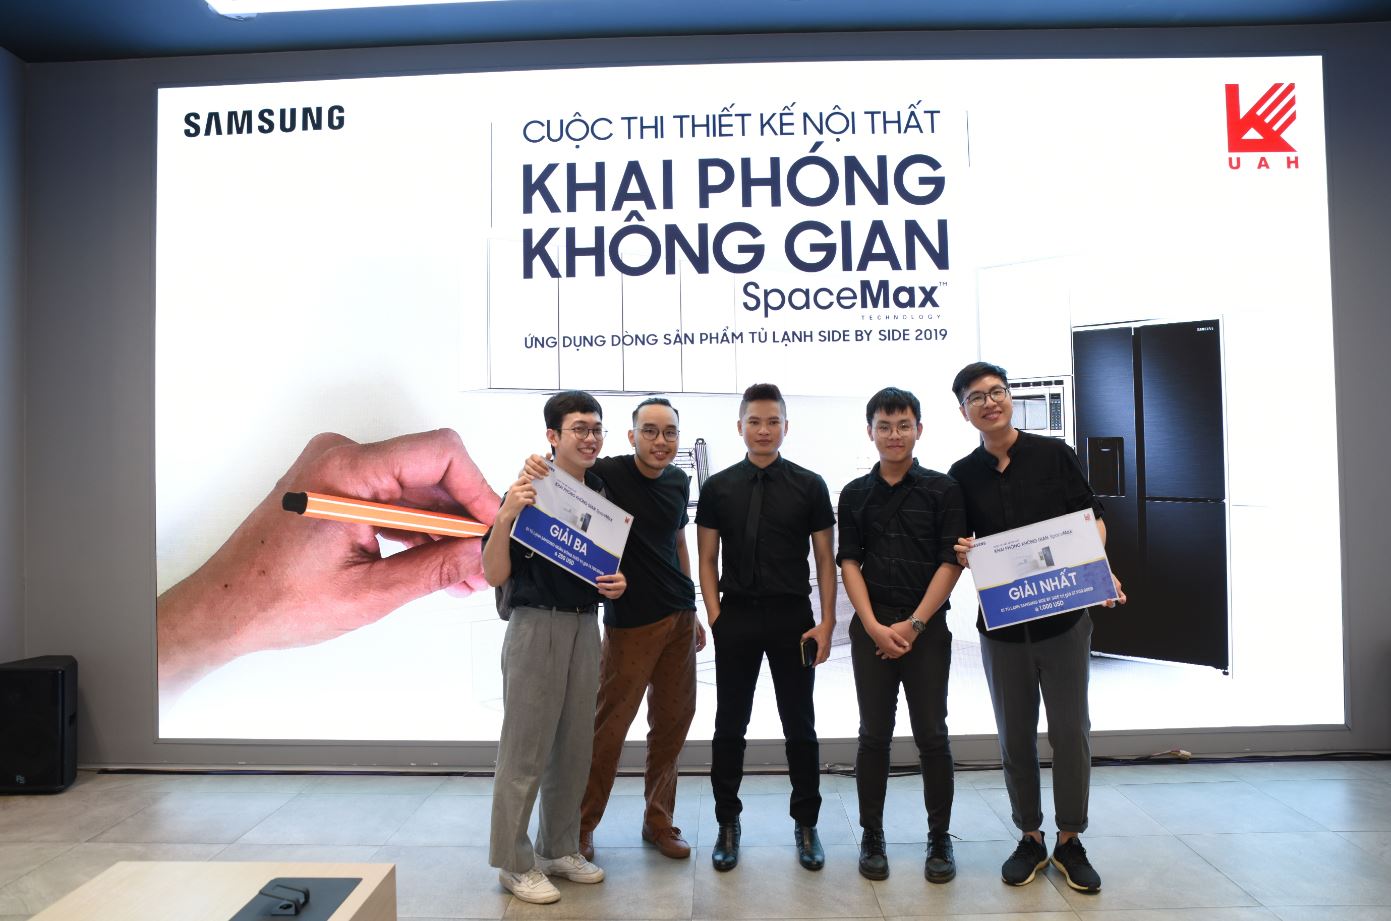 Samsung tổ chức chung kết cuộc thi thiết kế “Khai phóng không gian Spacemax" dành cho sinh viên Kiến trúc TP. HCM